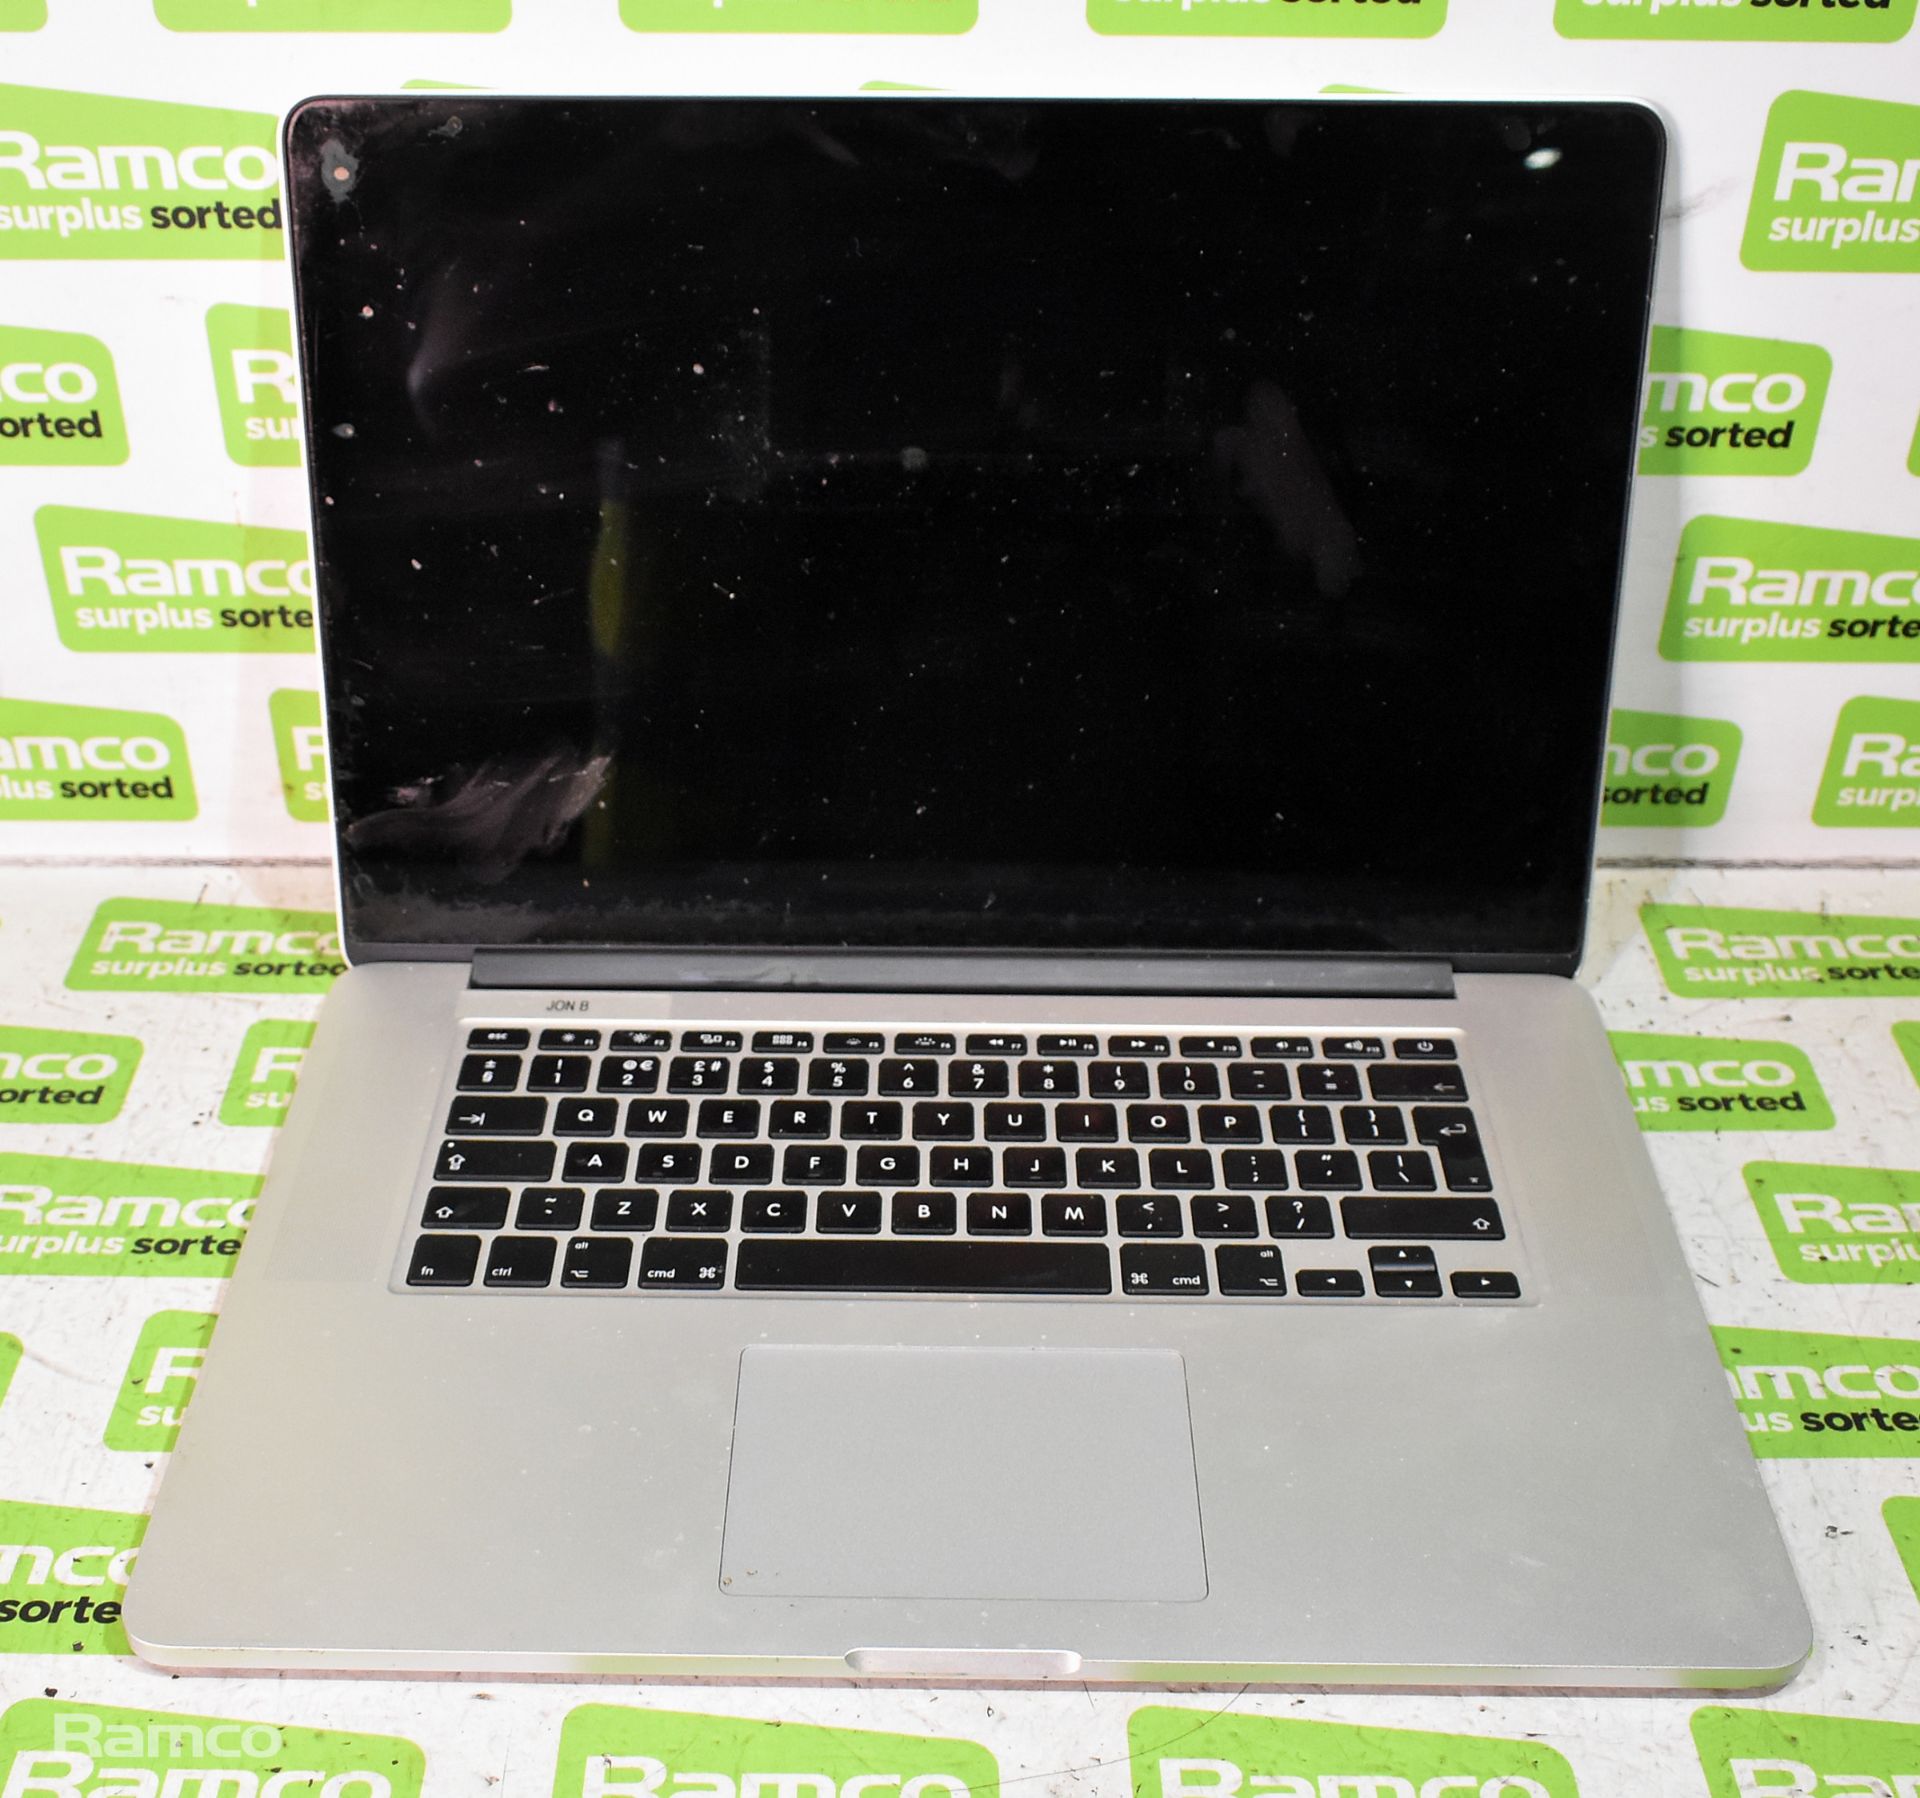 Apple MacBook Pro 15 Inch A1398 (EMC 2881) - Serial No. C02NN39KG3QP - 4870HQ i7 Quad Core 2.5GHz CP